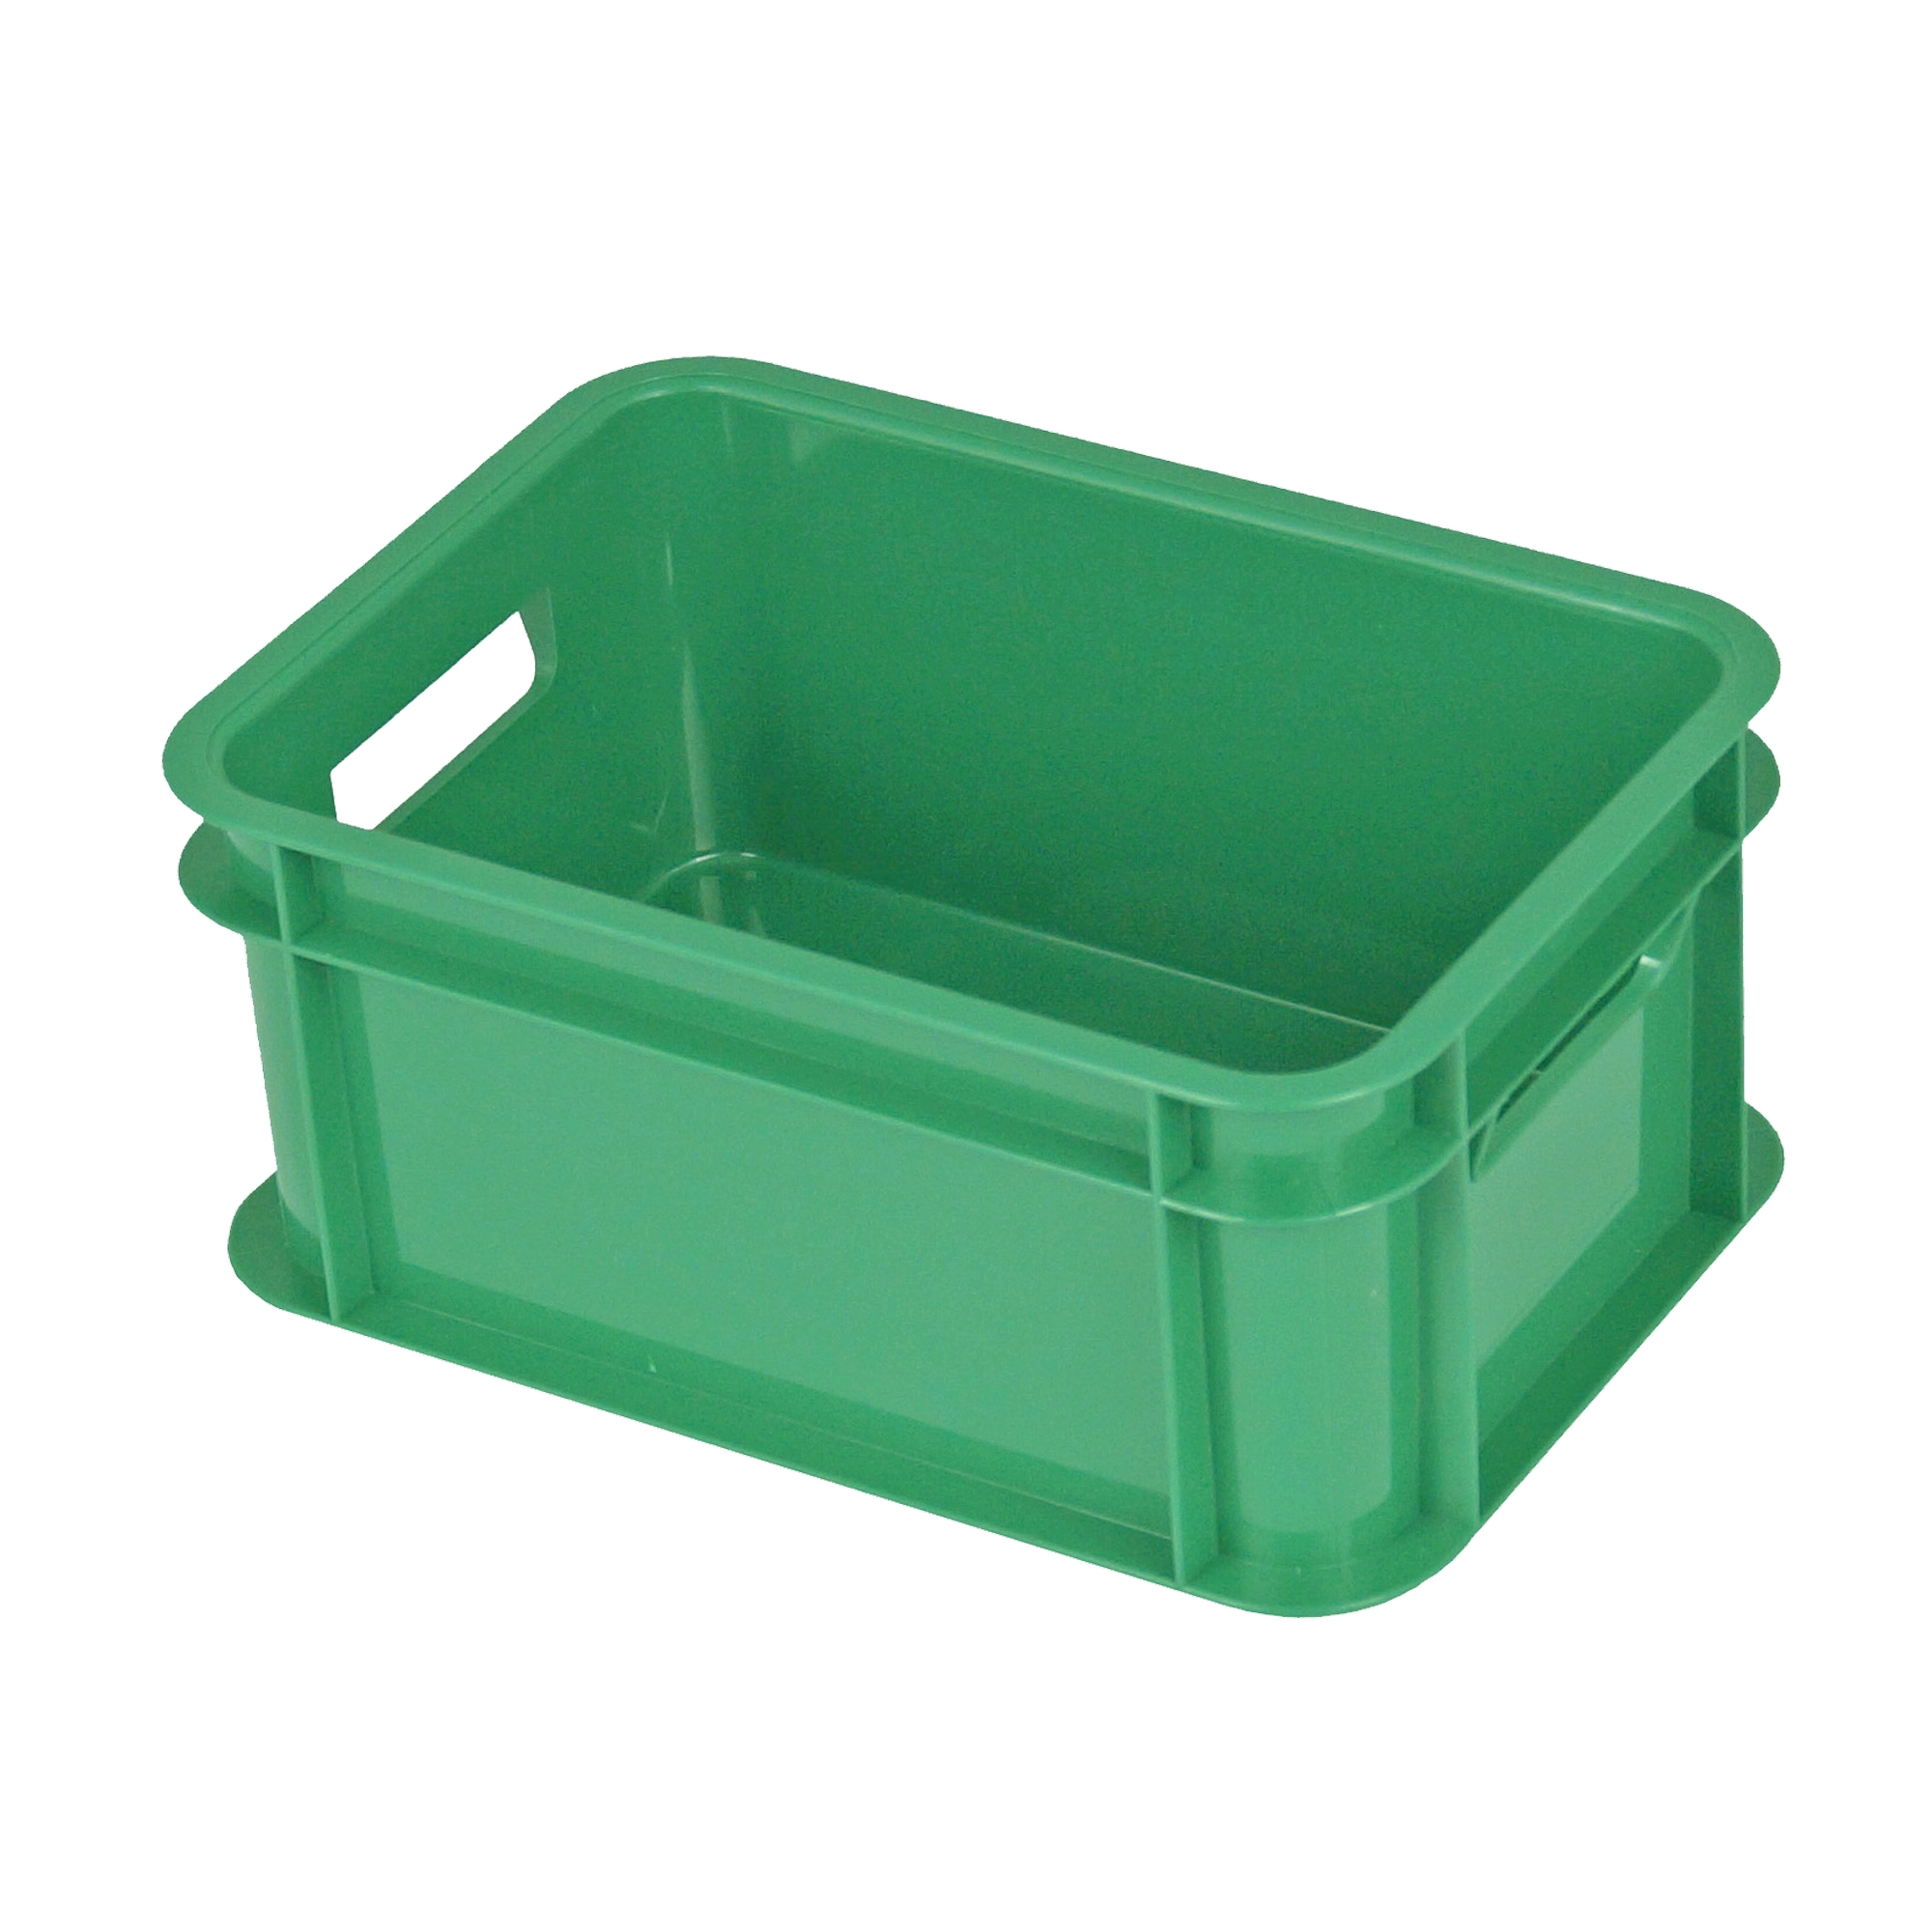 Aufbewahrungsbox 'Bambini-Box' grün 16,5 x 11,7 x 7,5 cm, 1 l + product picture